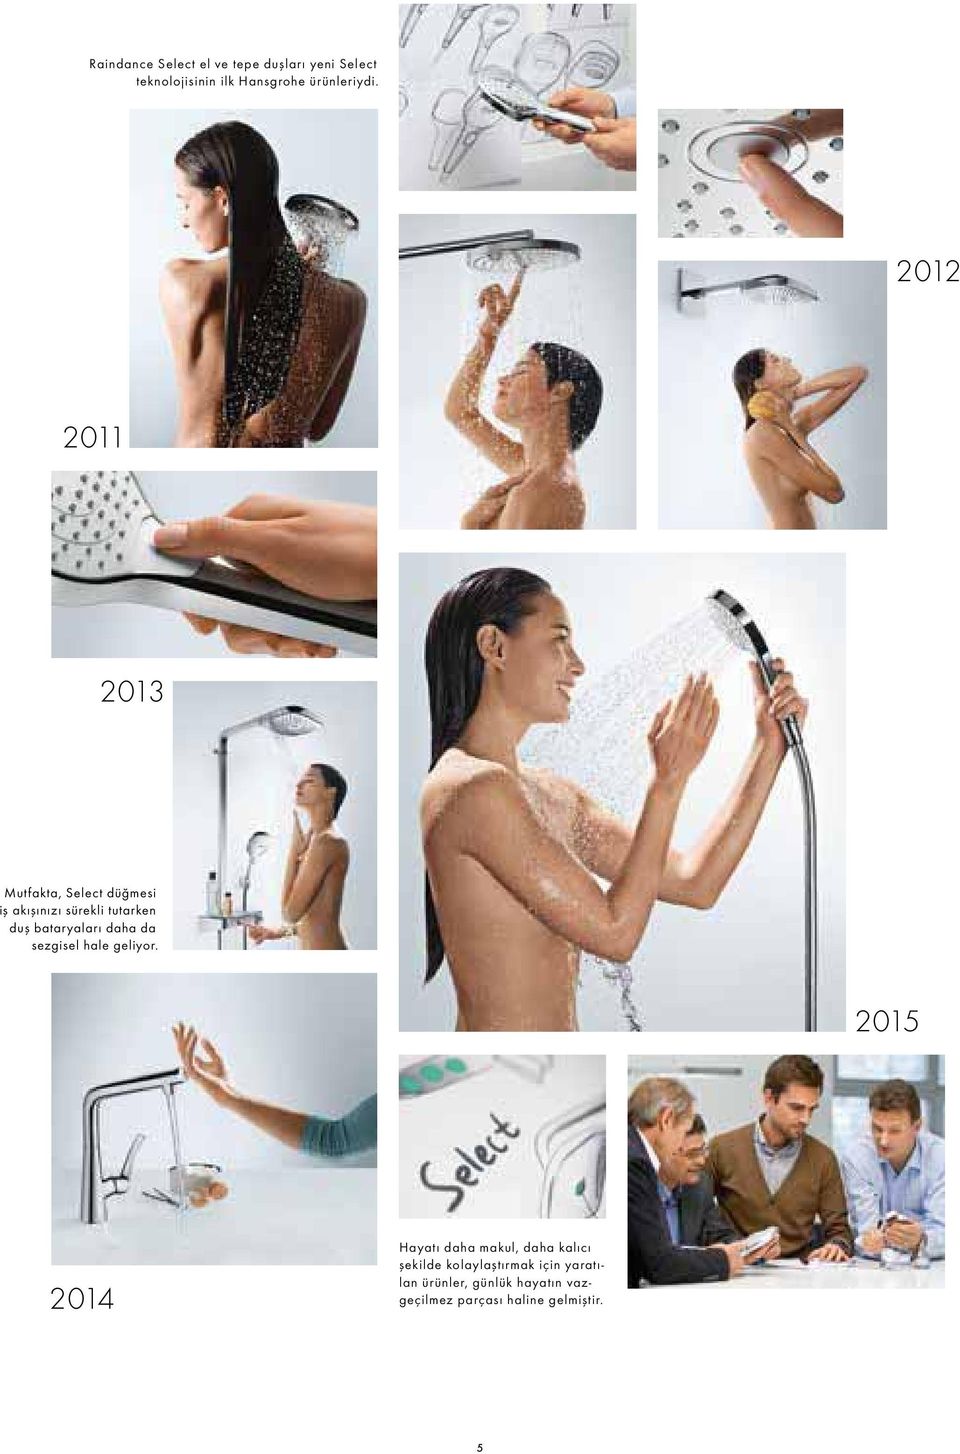 2012 2011 2013 Mutfakta, Select düğmesi iş akışınızı sürekli tutarken duş bataryaları